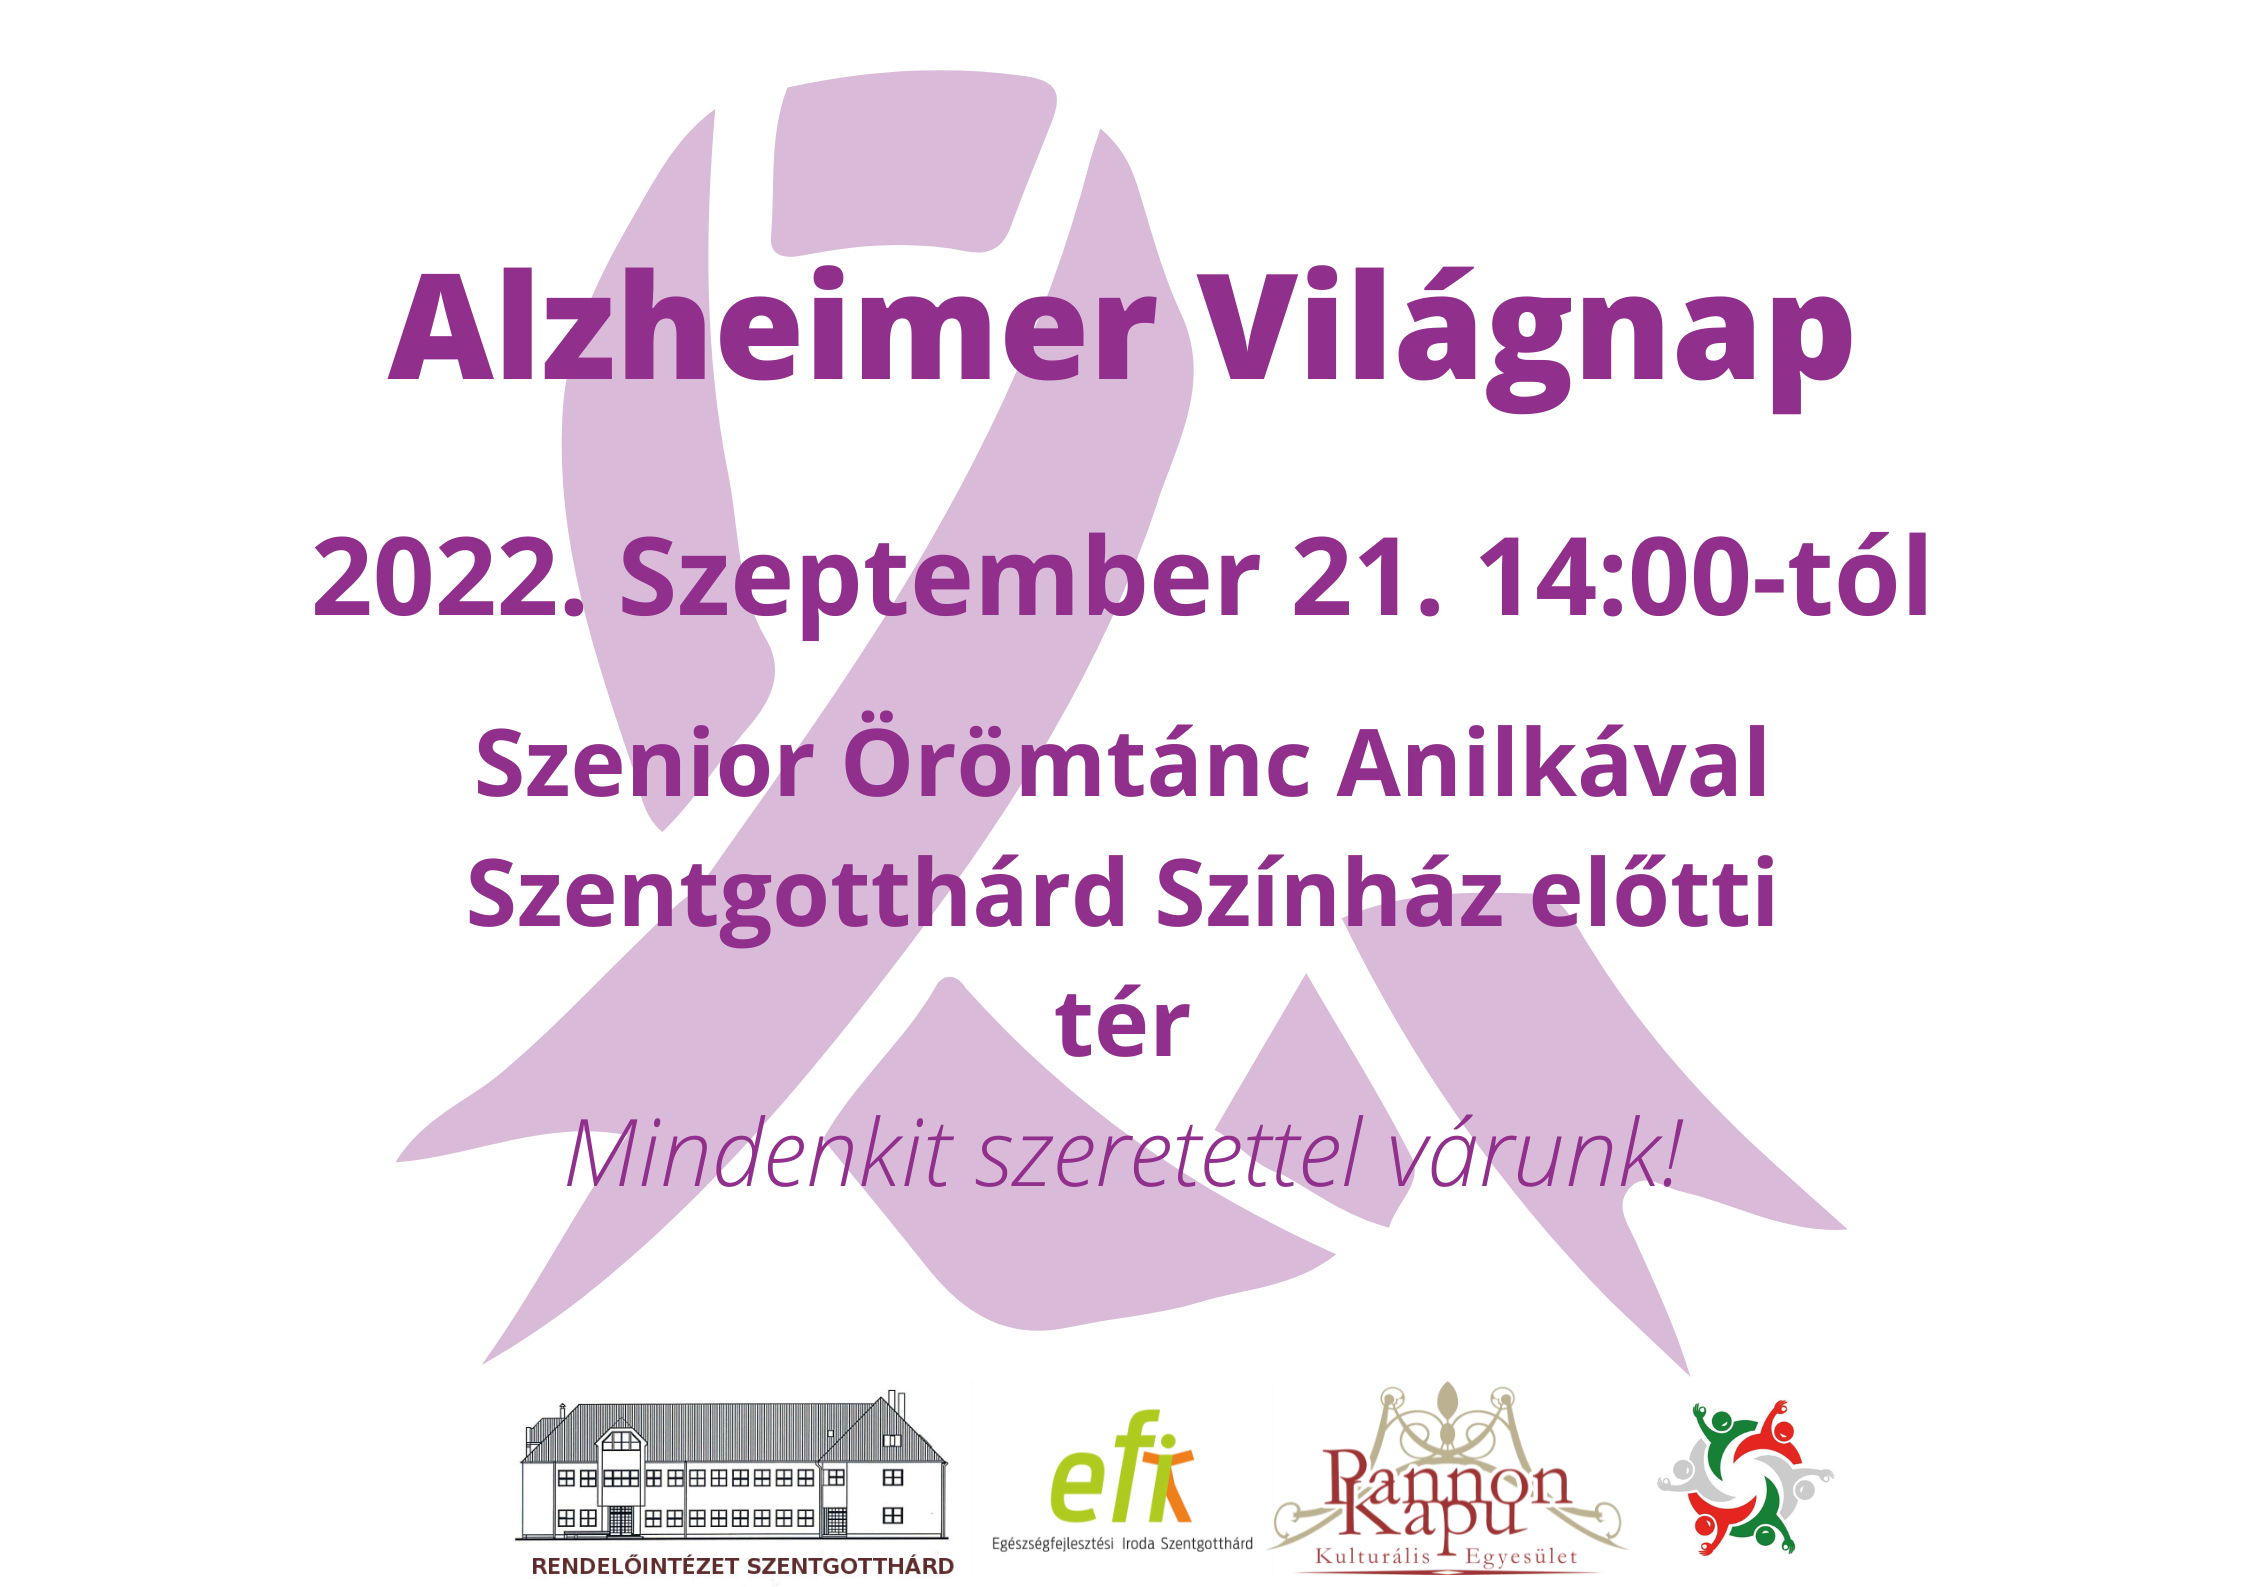 Alzheimer Világnap 2022.Szemptember 21. 14:00-tól Szenior Örömtánc Anilkával Szentgotthárd Színház előtti tér. Mindenkit szeretettel várunk!